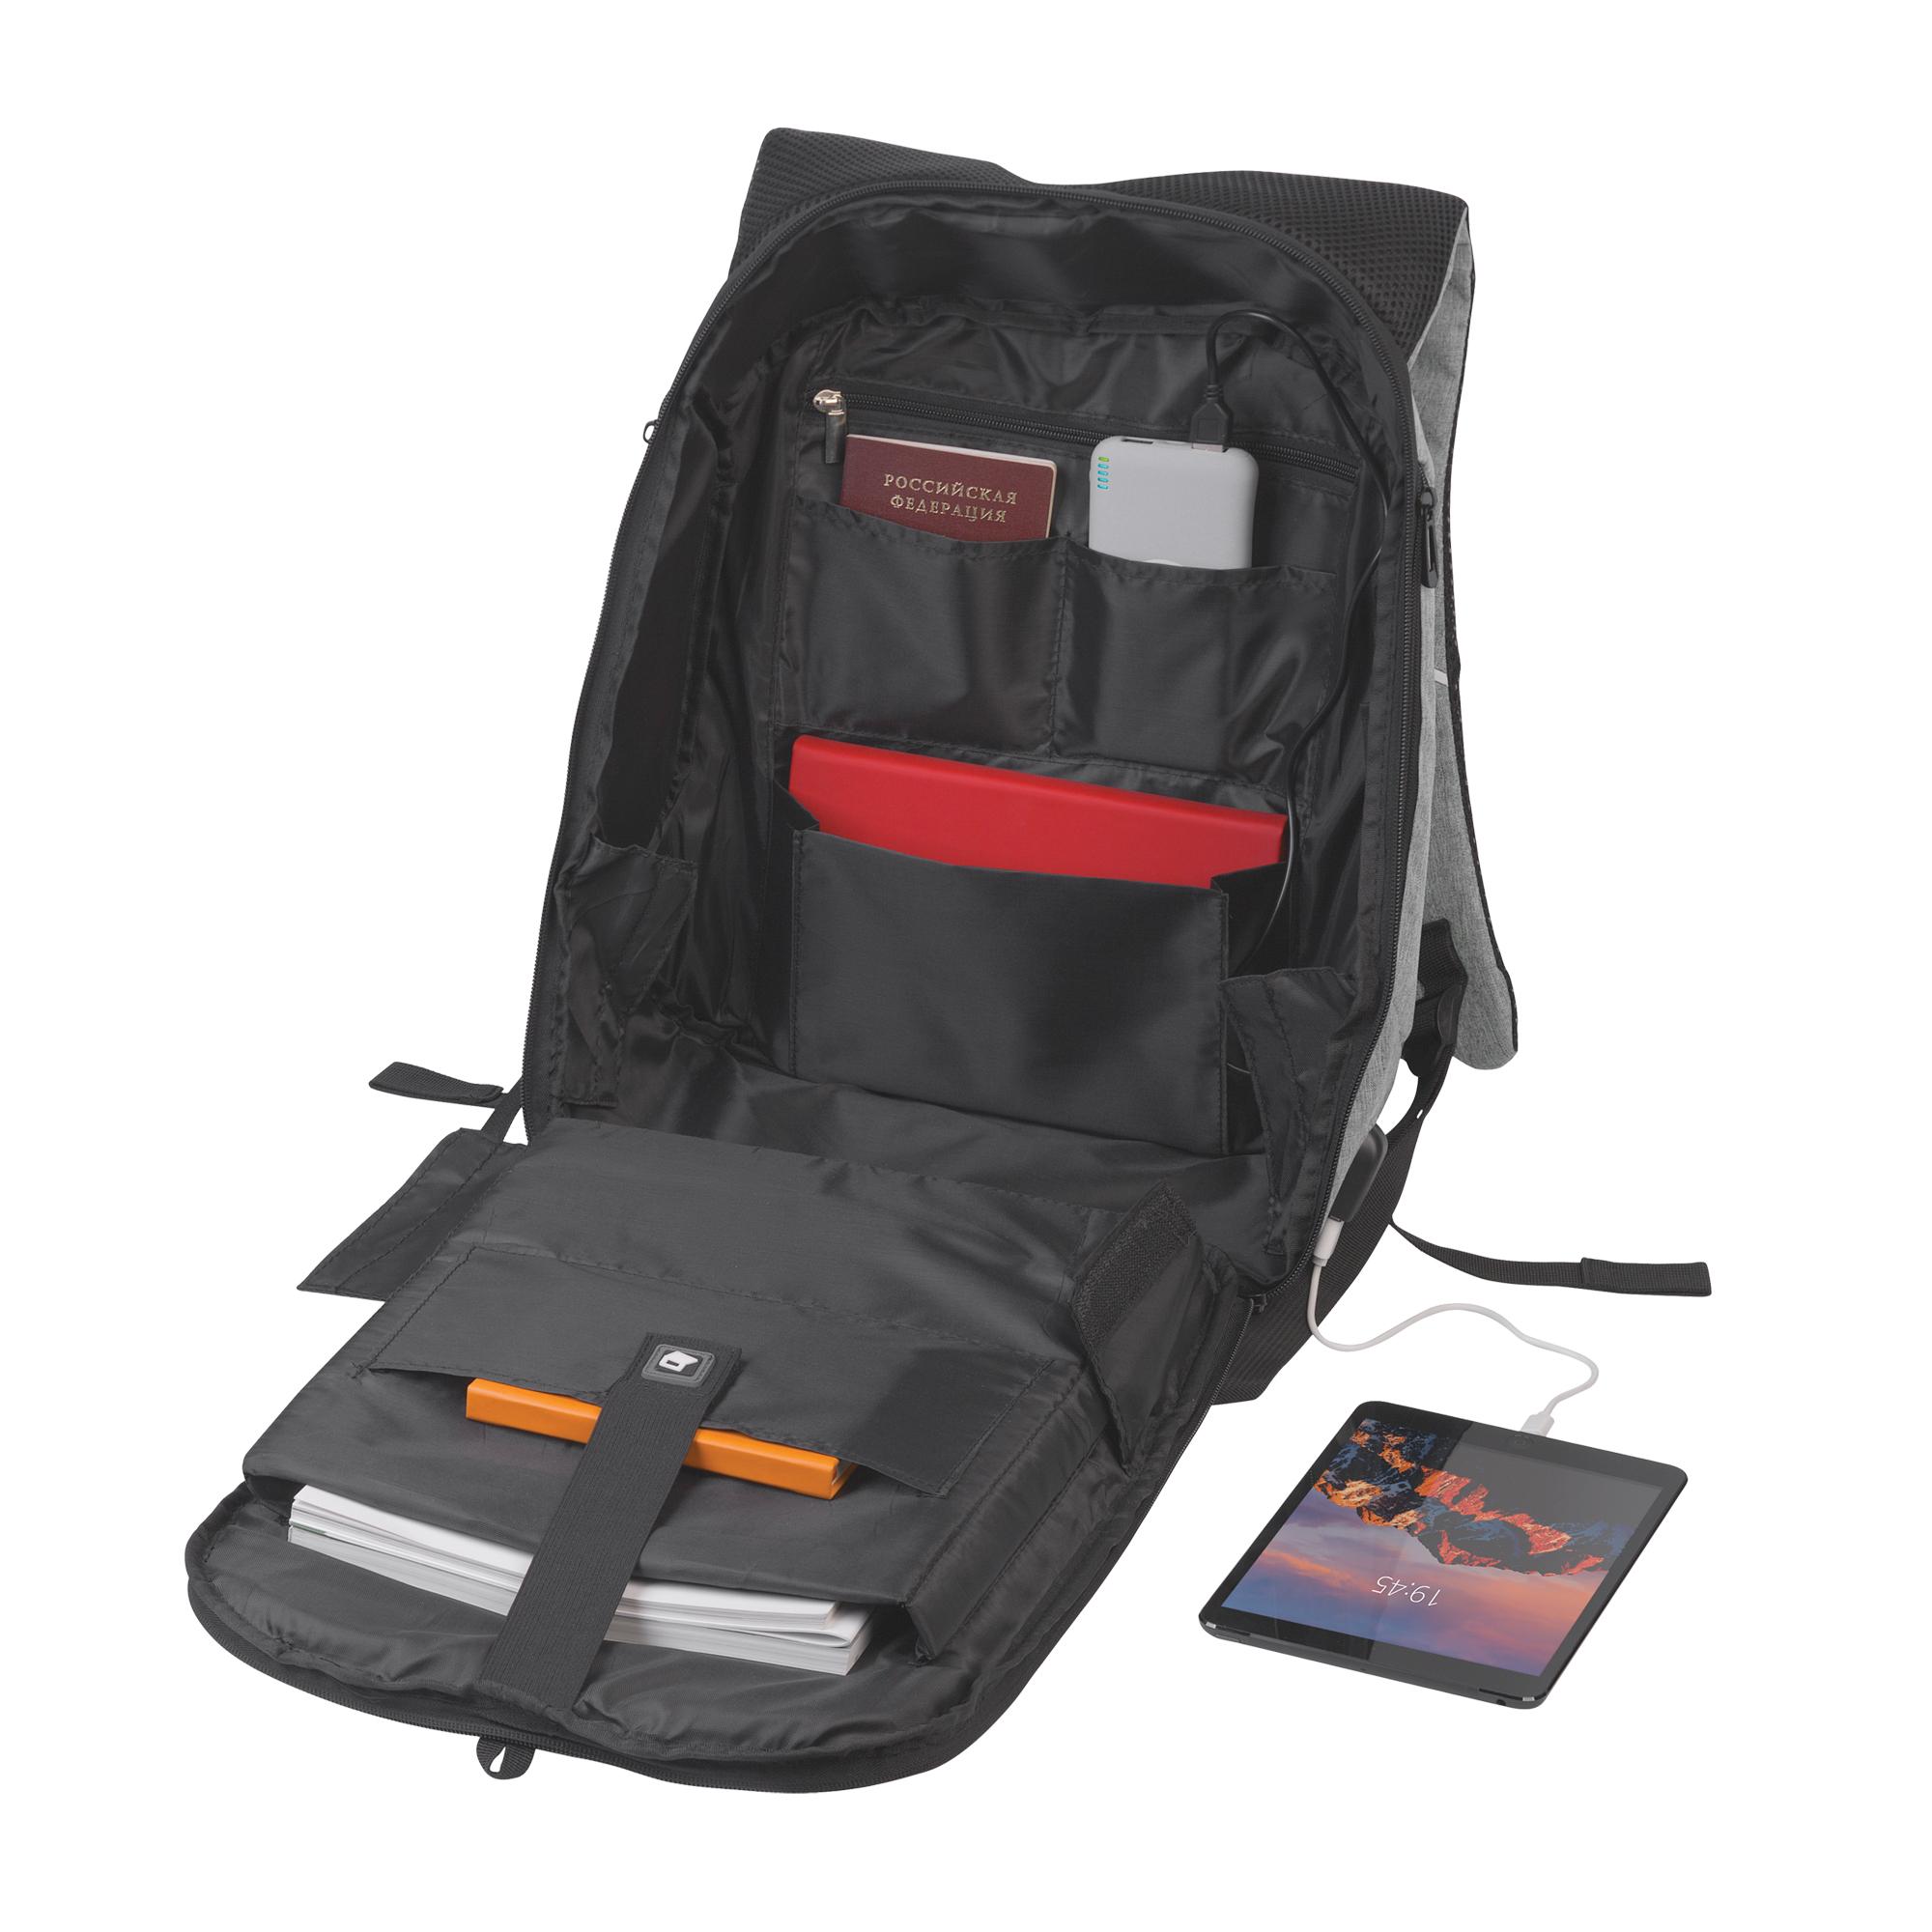 Рюкзак "Holiday" с USB разъемом и защитой от кражи, цвет серый с черным, фото 3